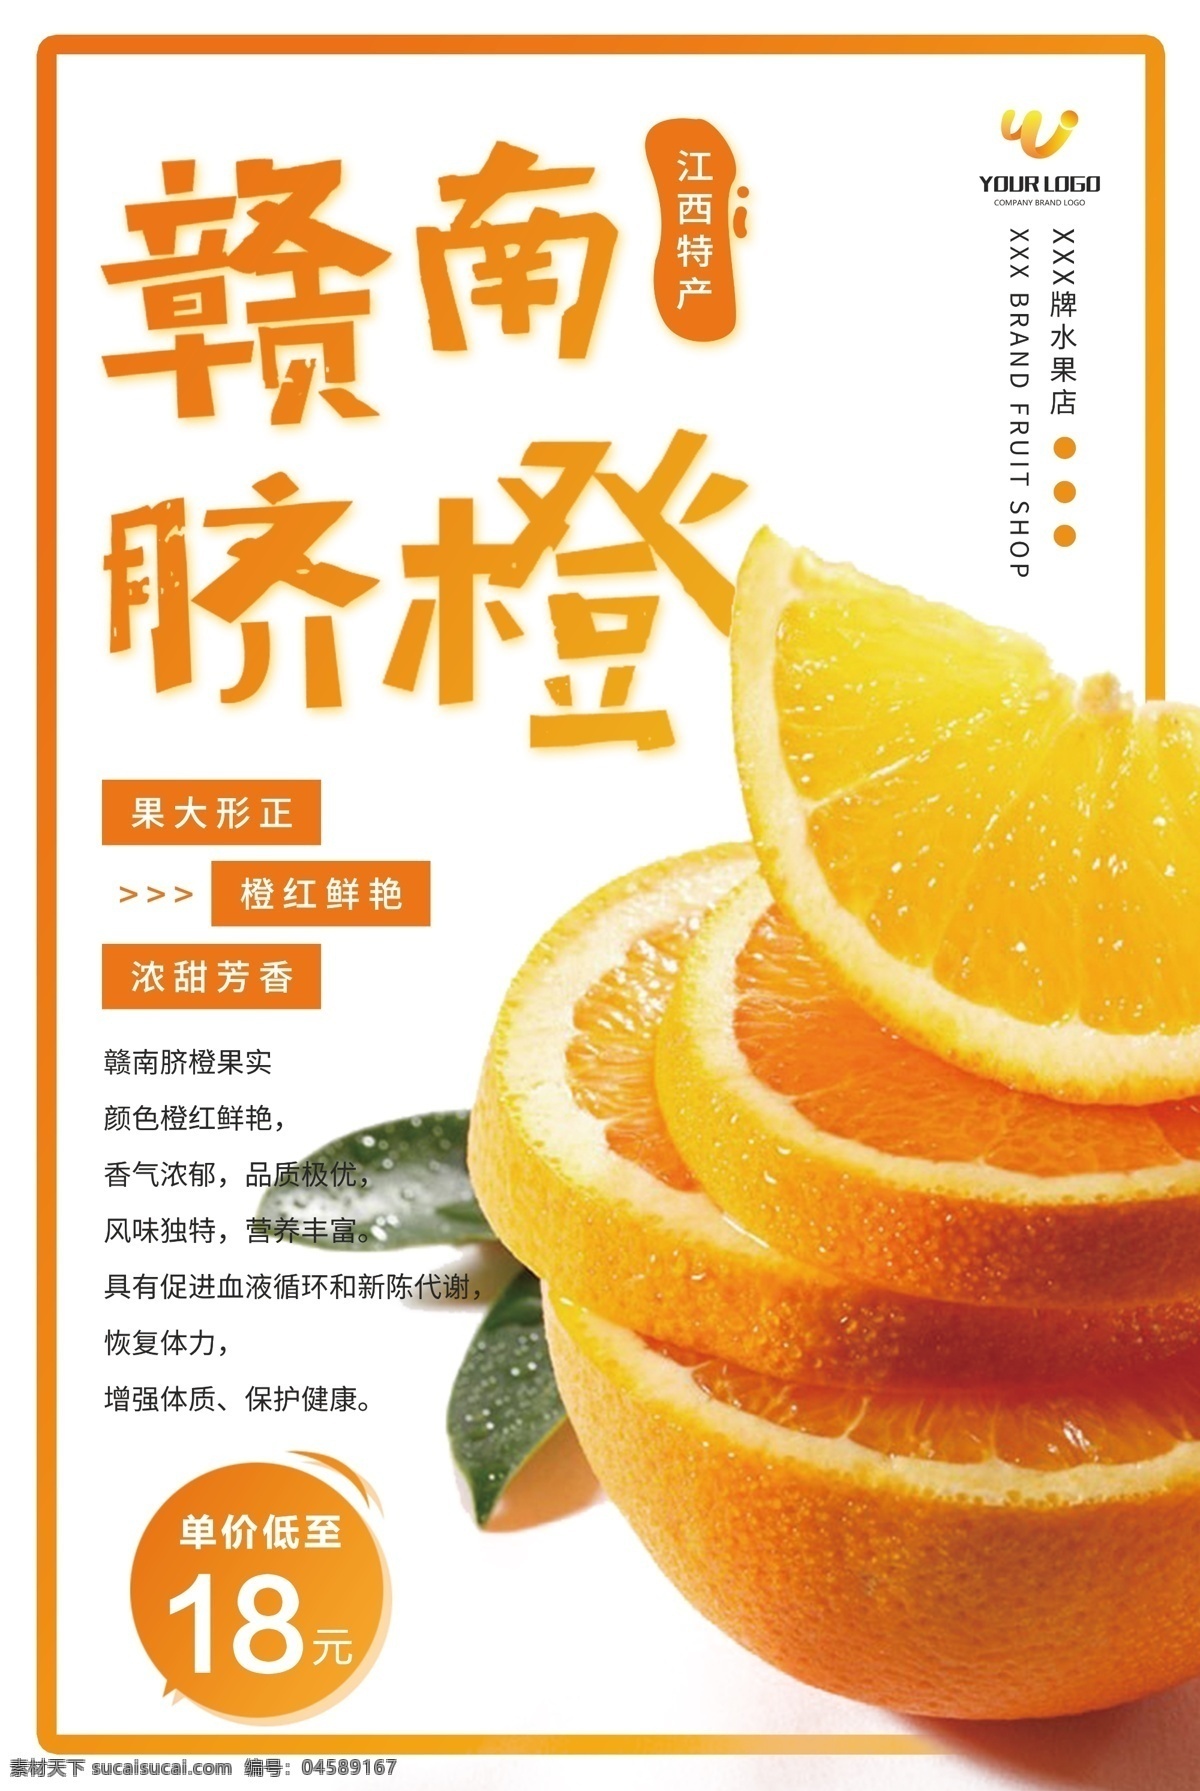 赣南 脐橙 水果 橙 水果背景 橙汁 蔬果 水果主图 夏季水果水果 赣南脐橙 香橙